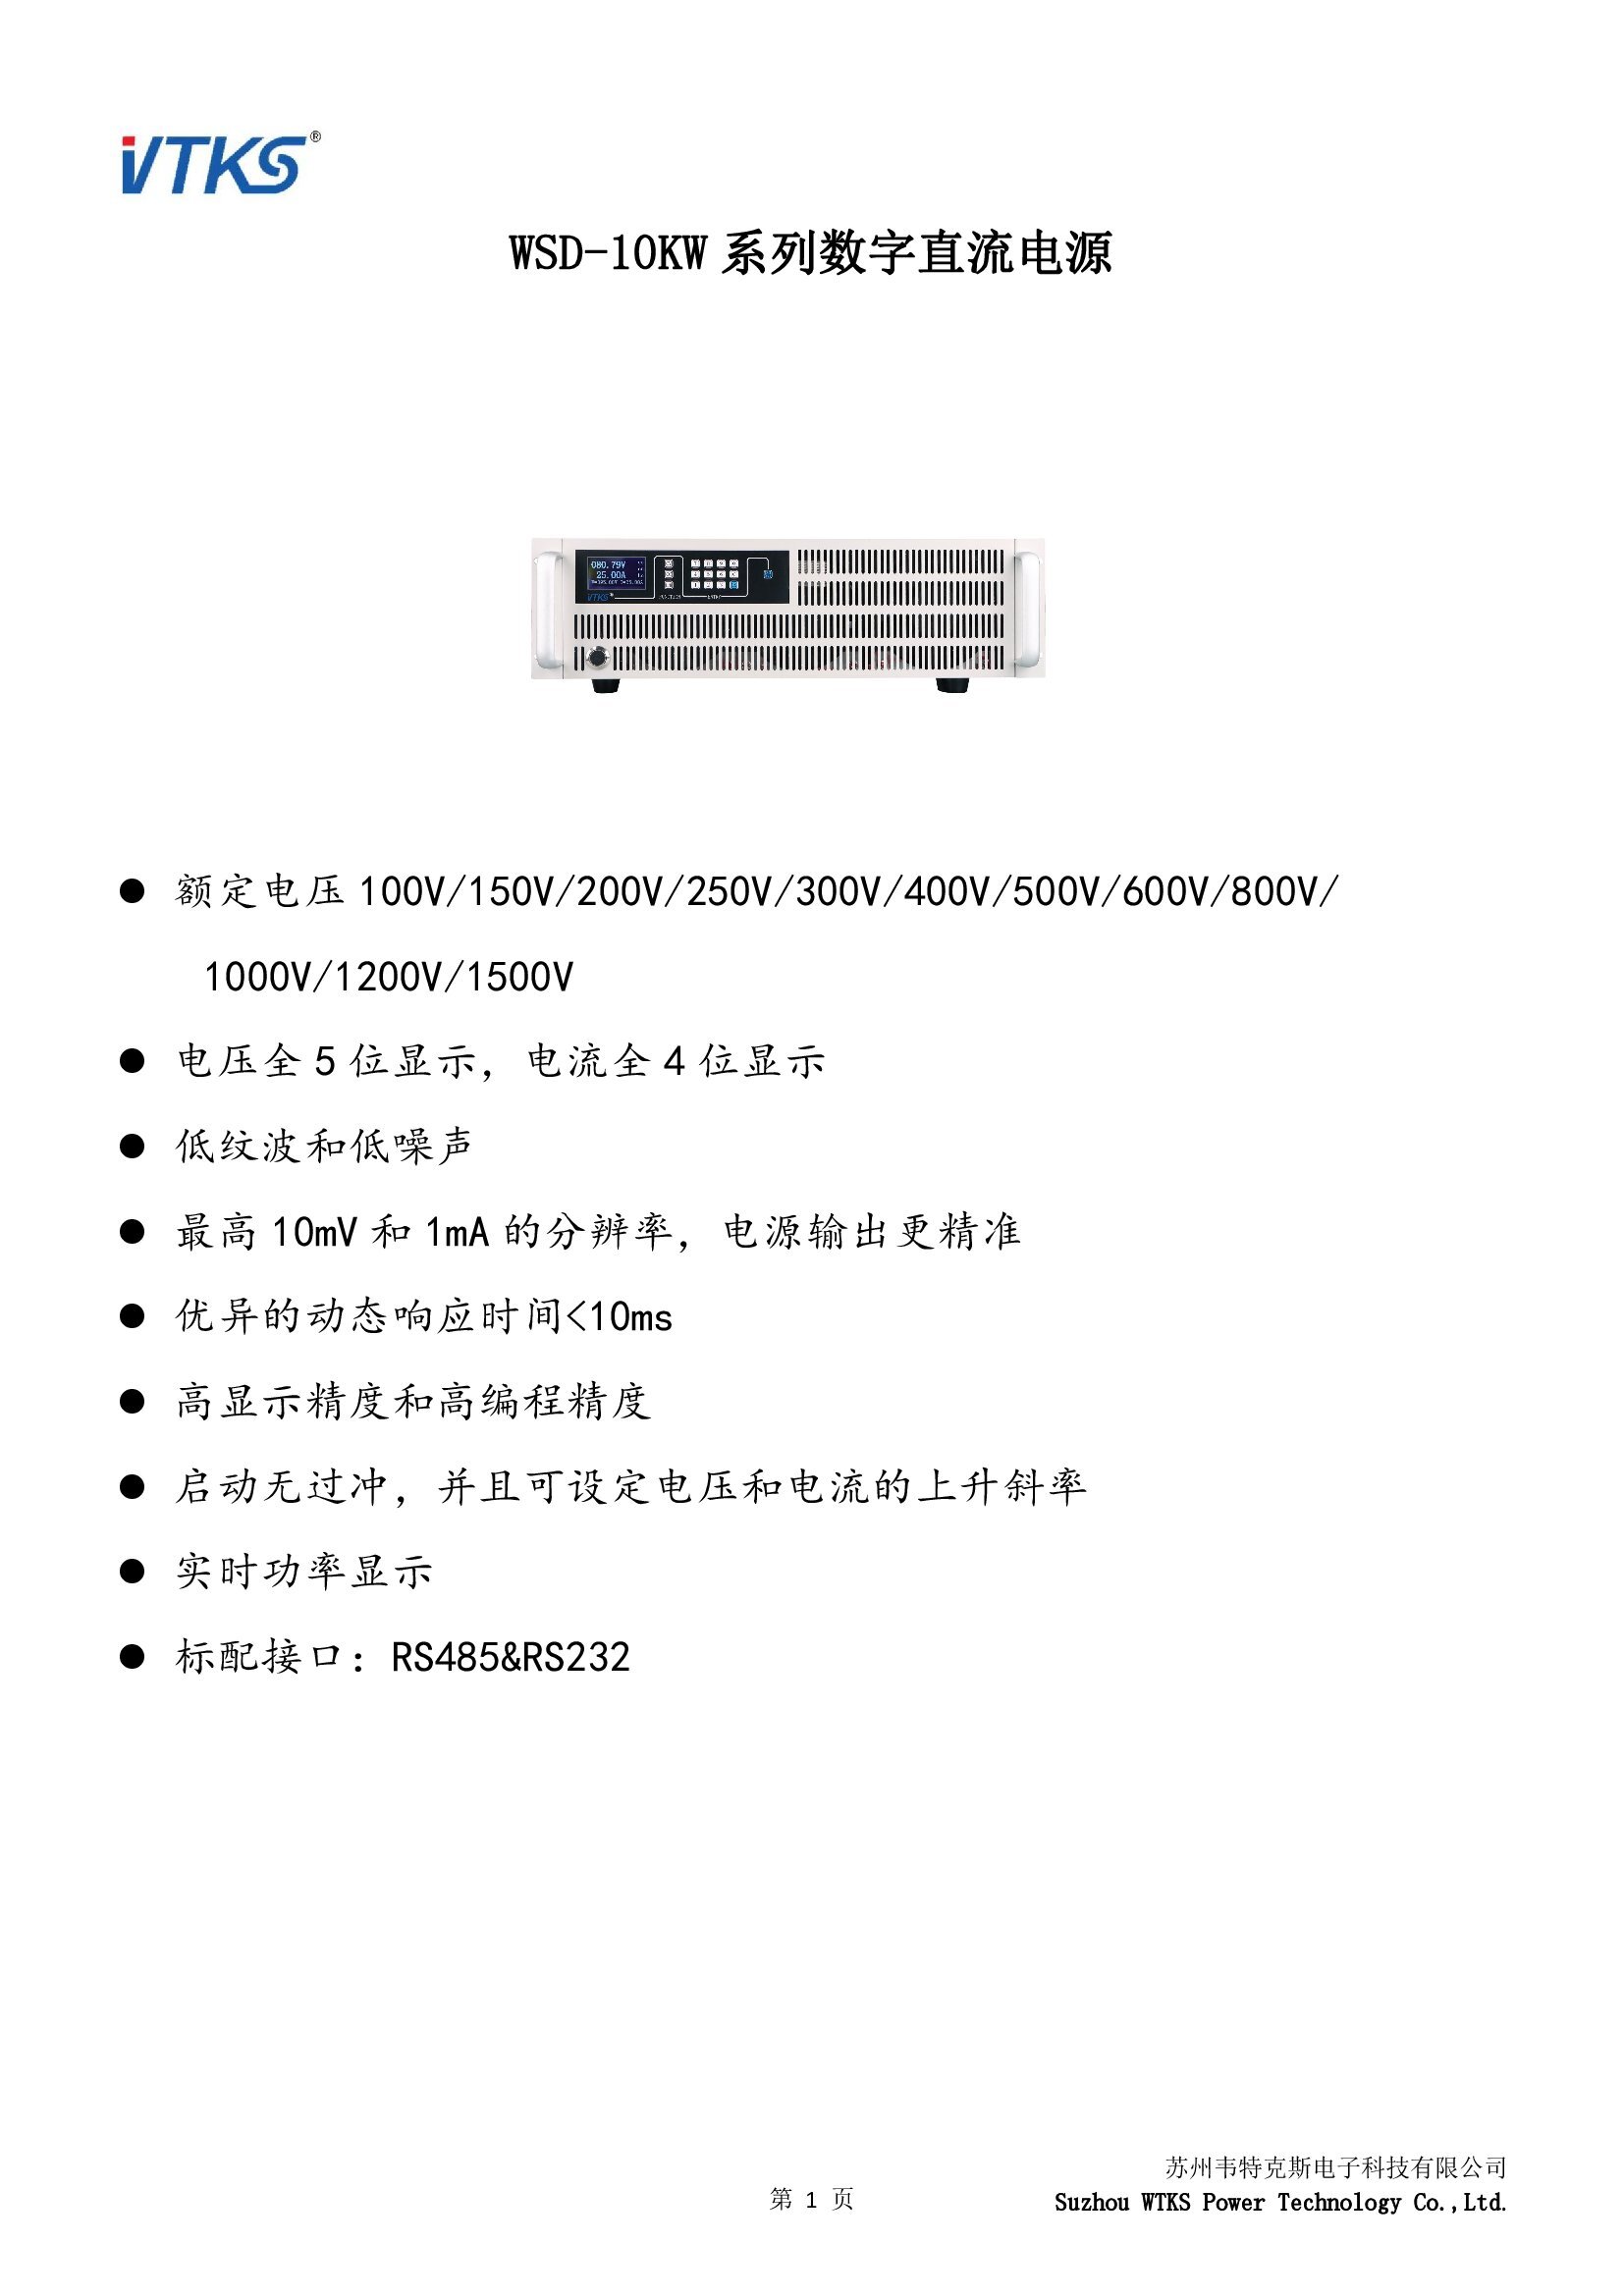 WSD-10KW系列数字直流电源技术资料_V1.06_00001.jpg